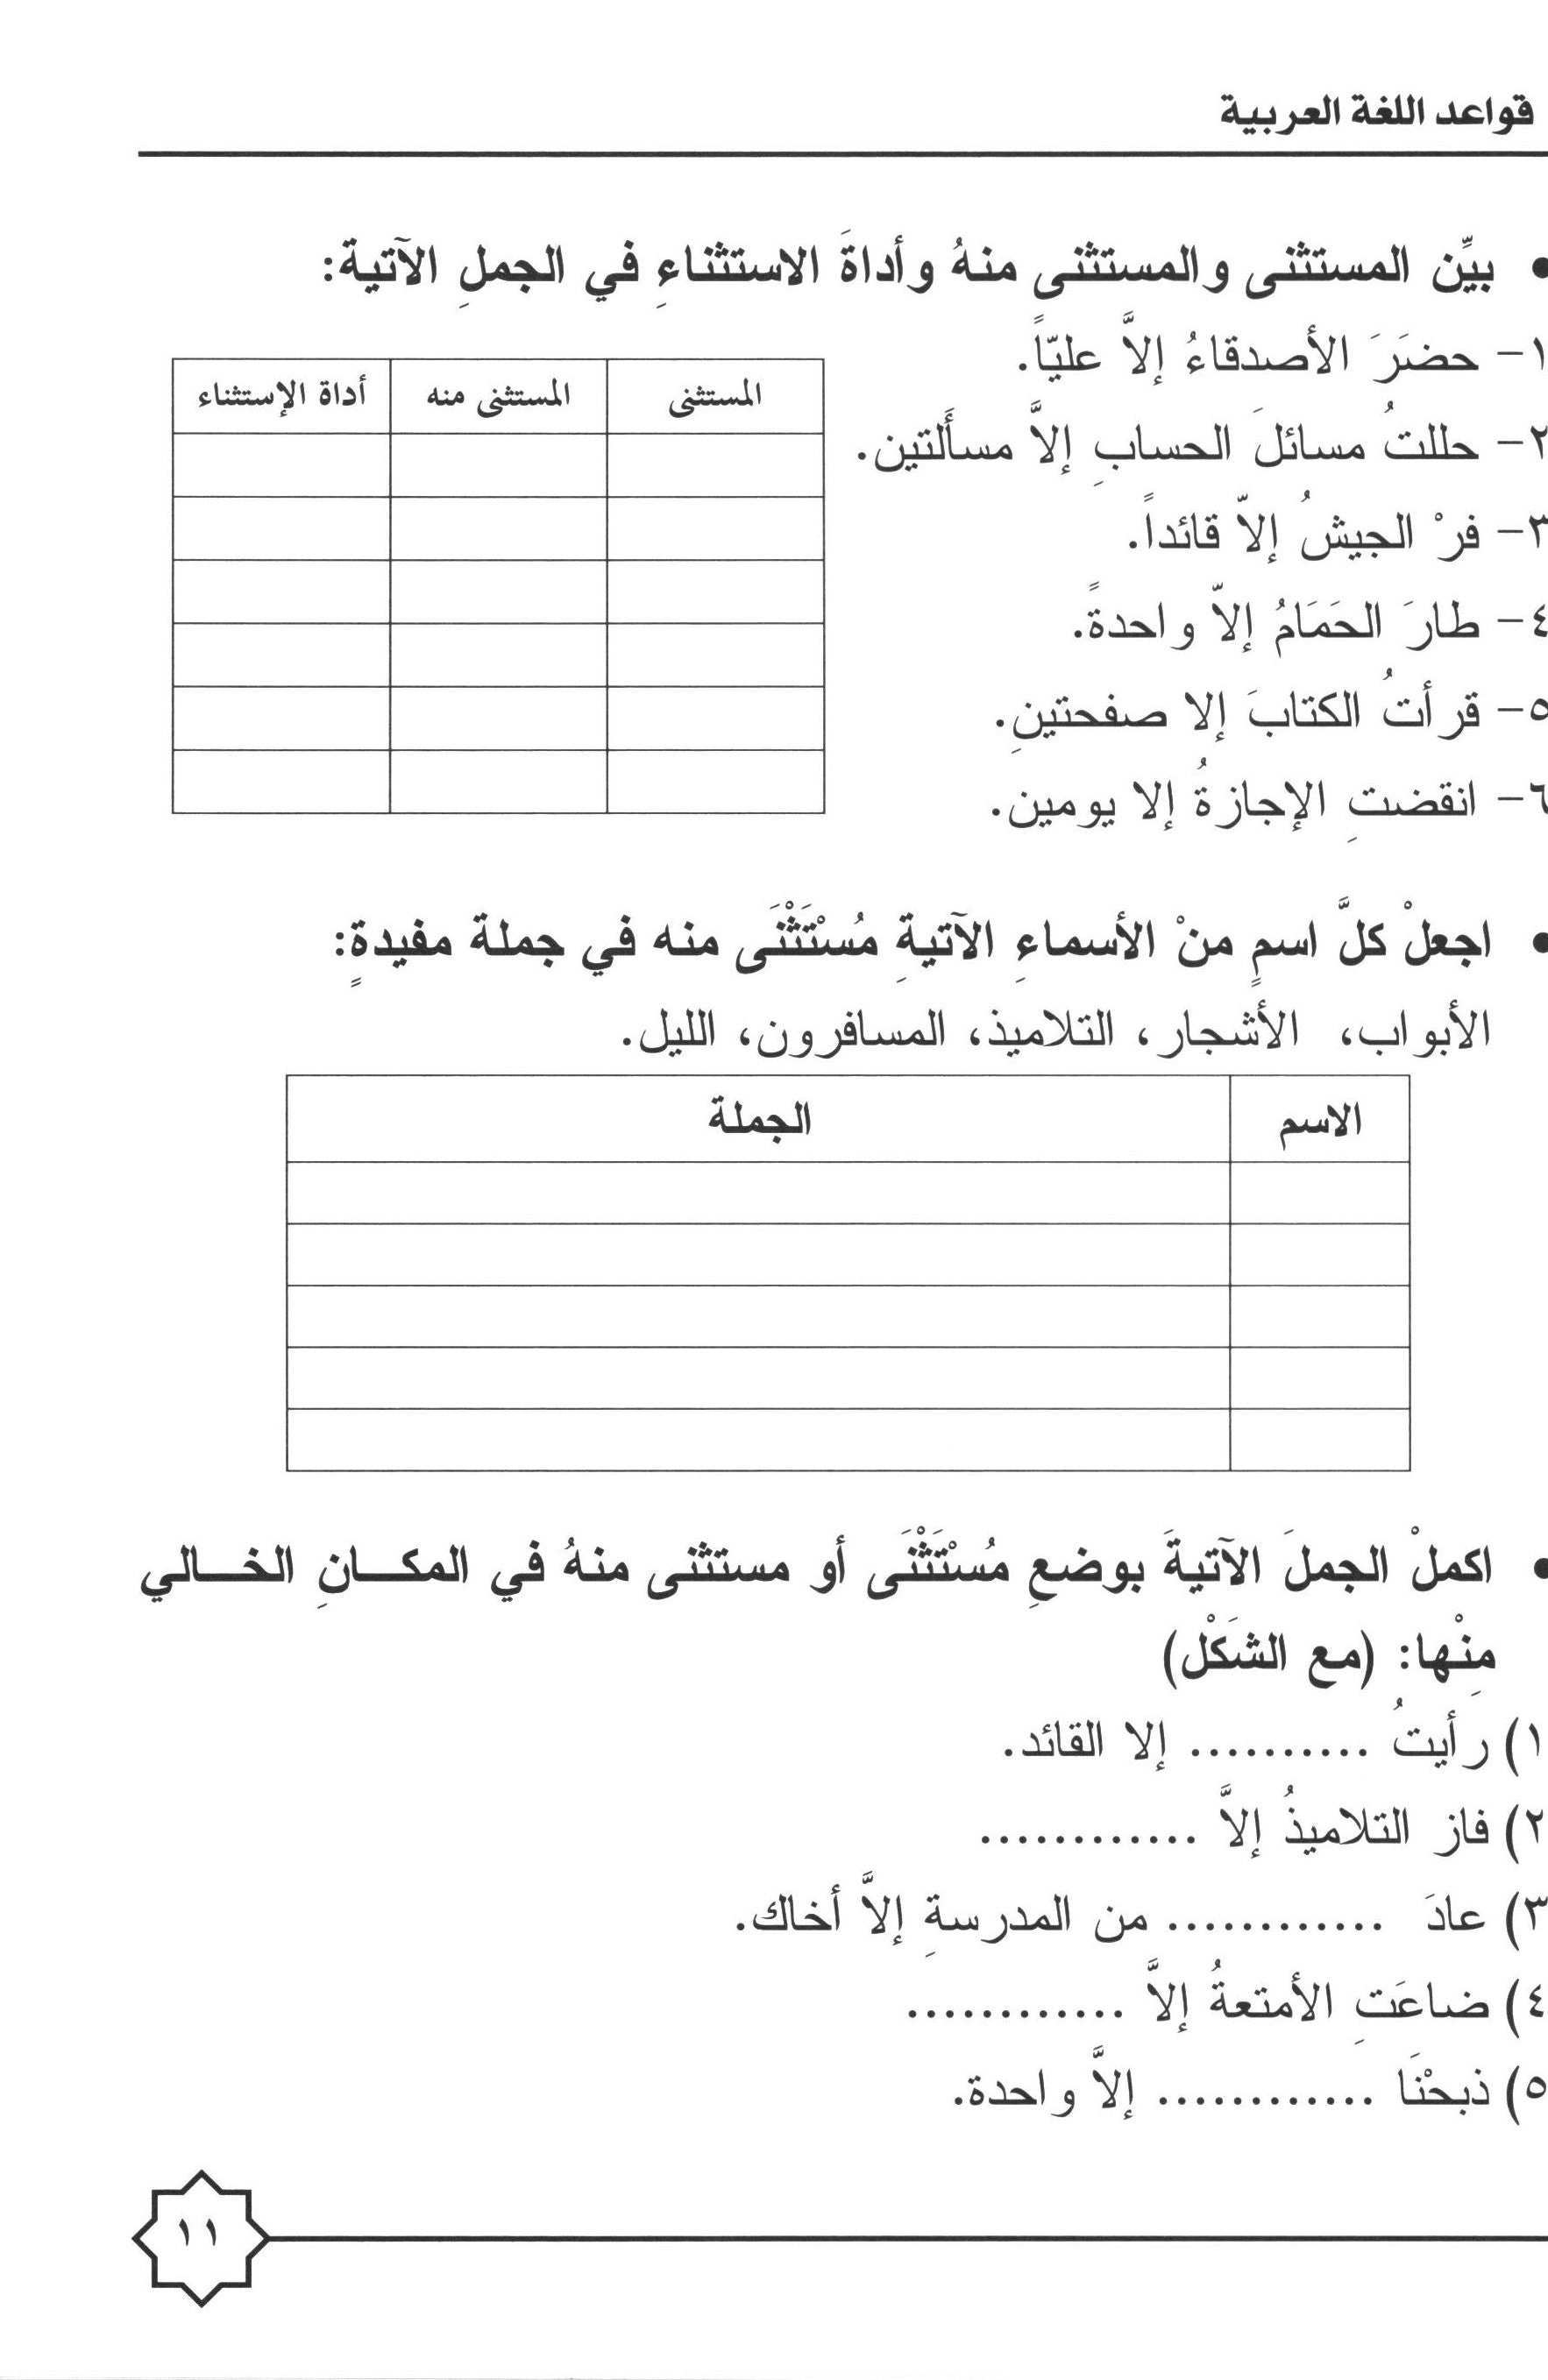 Al-Rowad Arabic Grammar Level 4 Part 1 تدريبات في قواعد اللّغة العربيّة